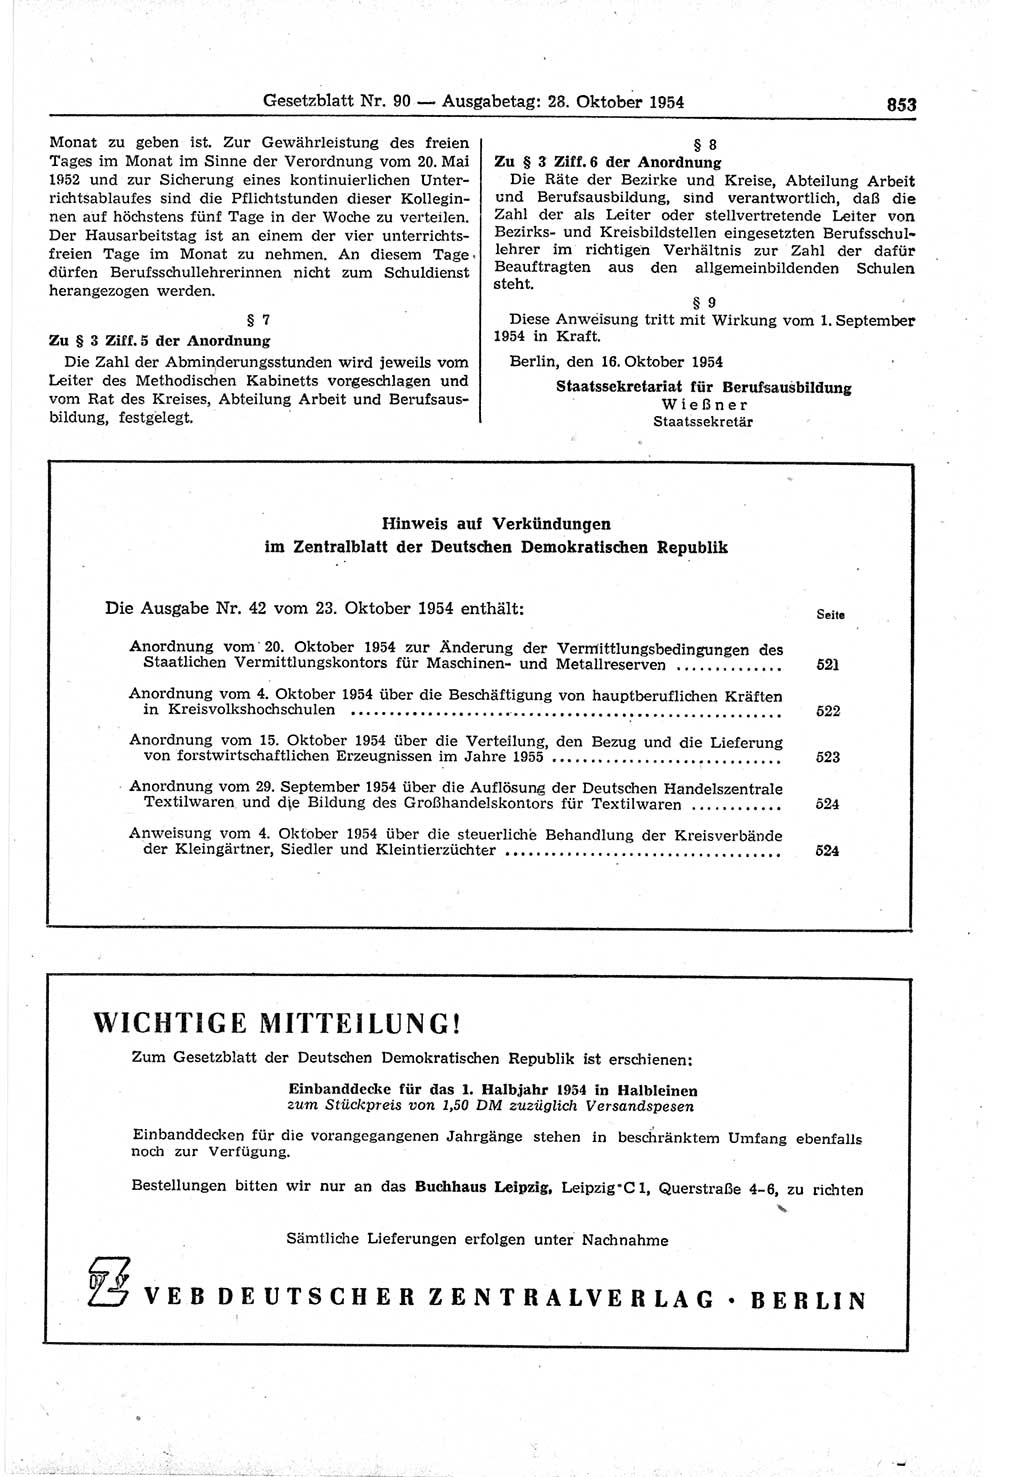 Gesetzblatt (GBl.) der Deutschen Demokratischen Republik (DDR) 1954, Seite 853 (GBl. DDR 1954, S. 853)